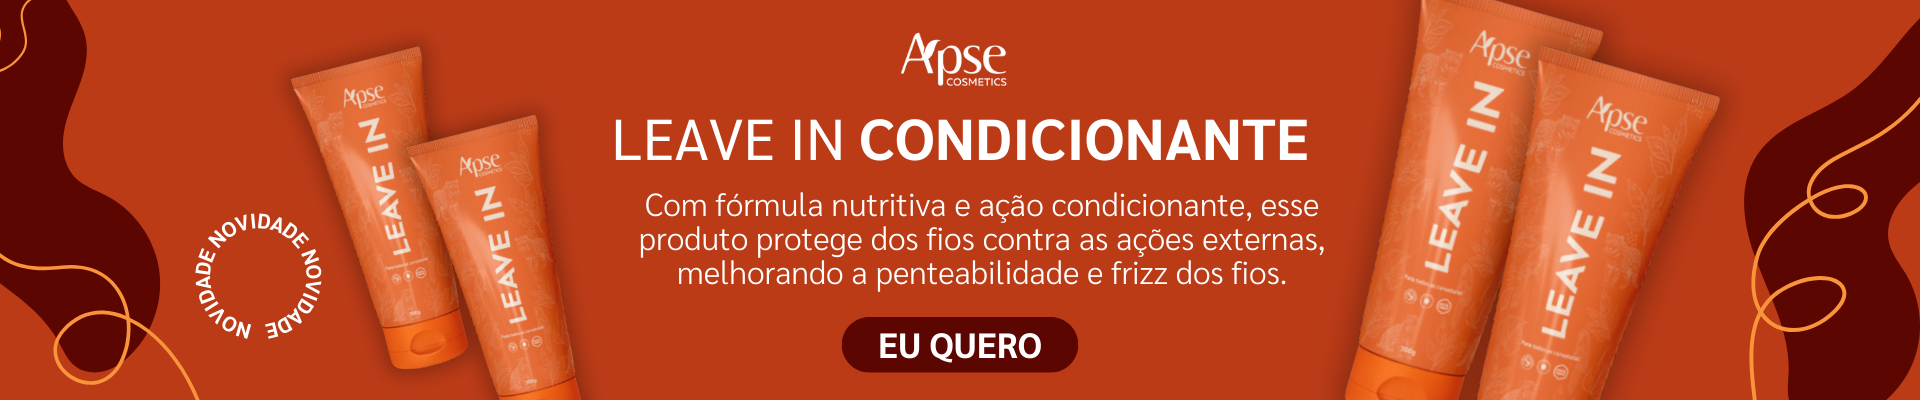 Leave In Condicionante - Apse